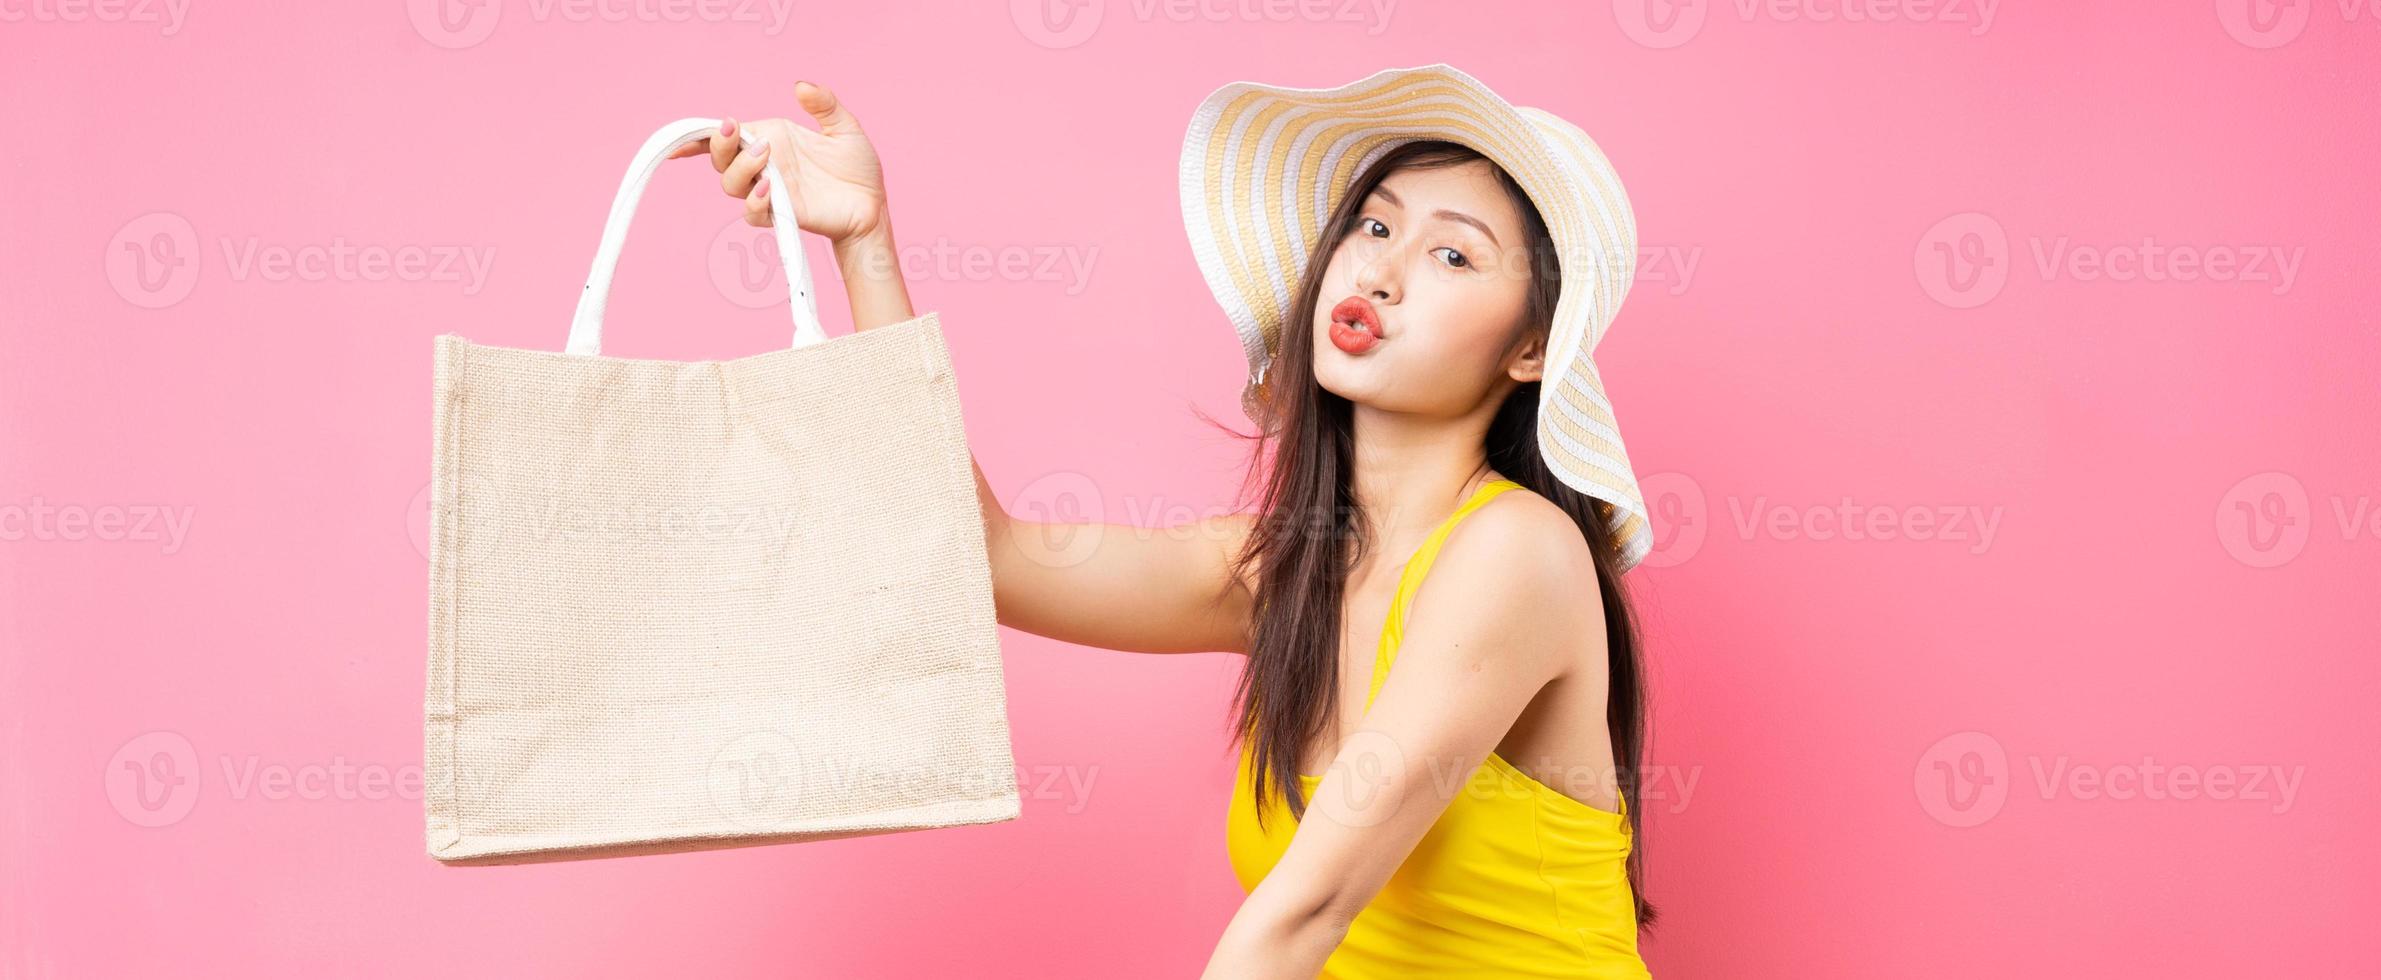 mooie jonge aziatische vrouw in geel zwempak, tas en breedgerande hoed die zich voordeed op roze achtergrond foto